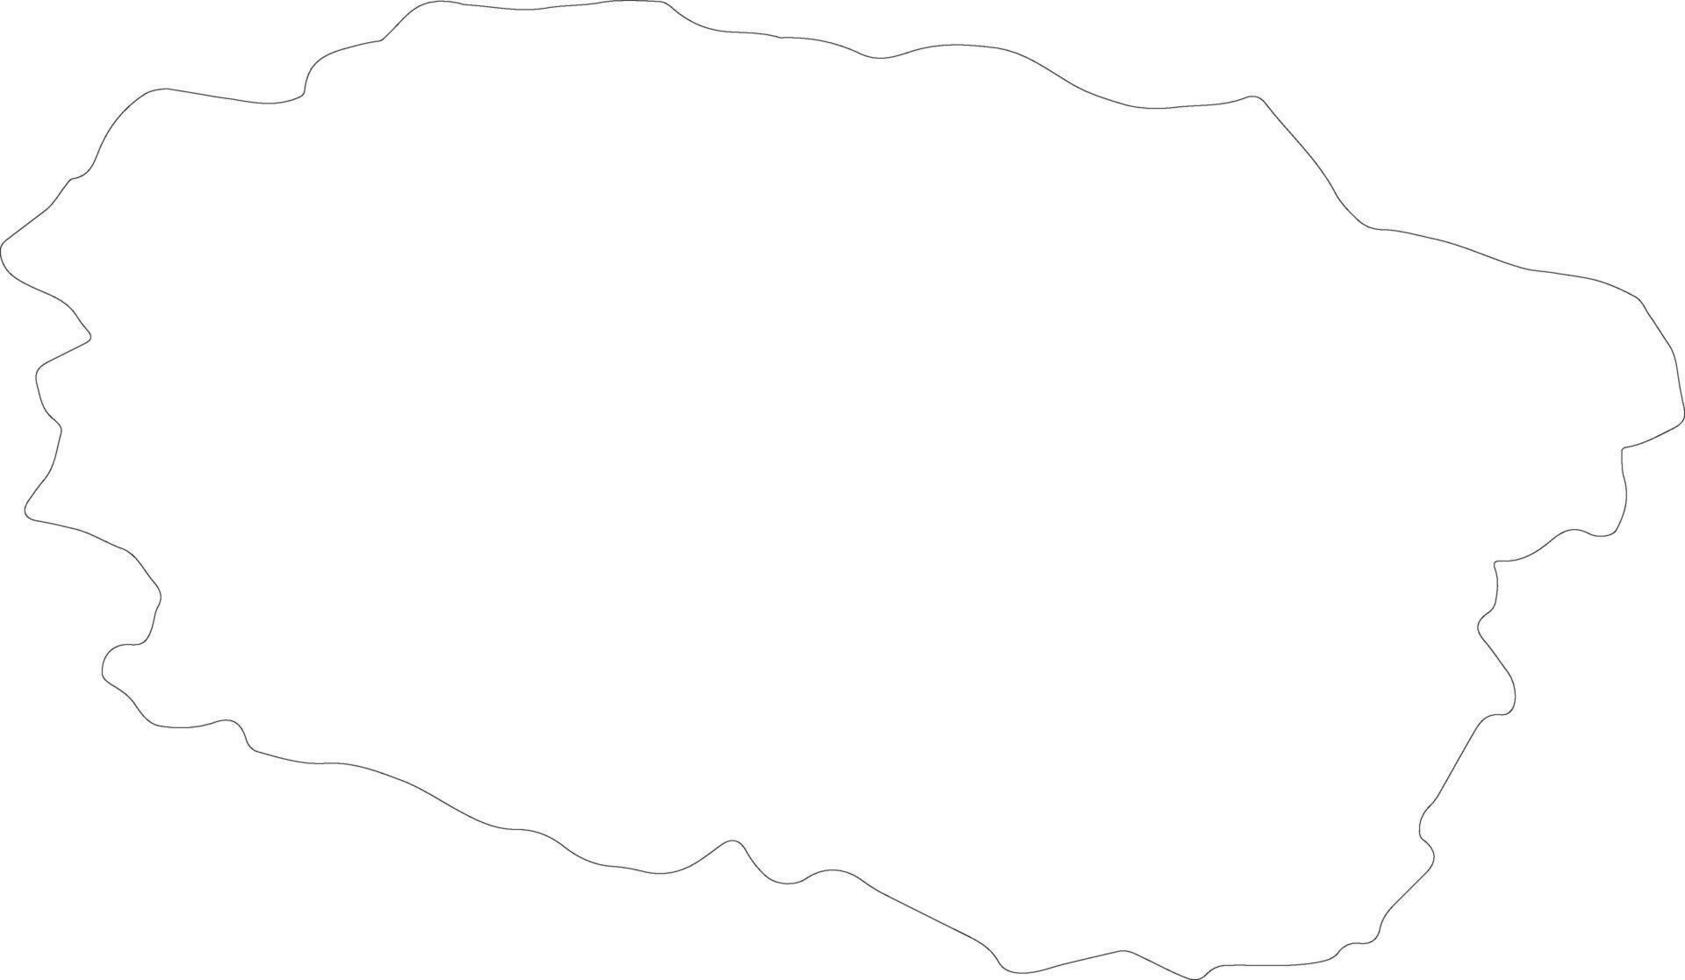 kuyavian-pommeren Polen schets kaart vector